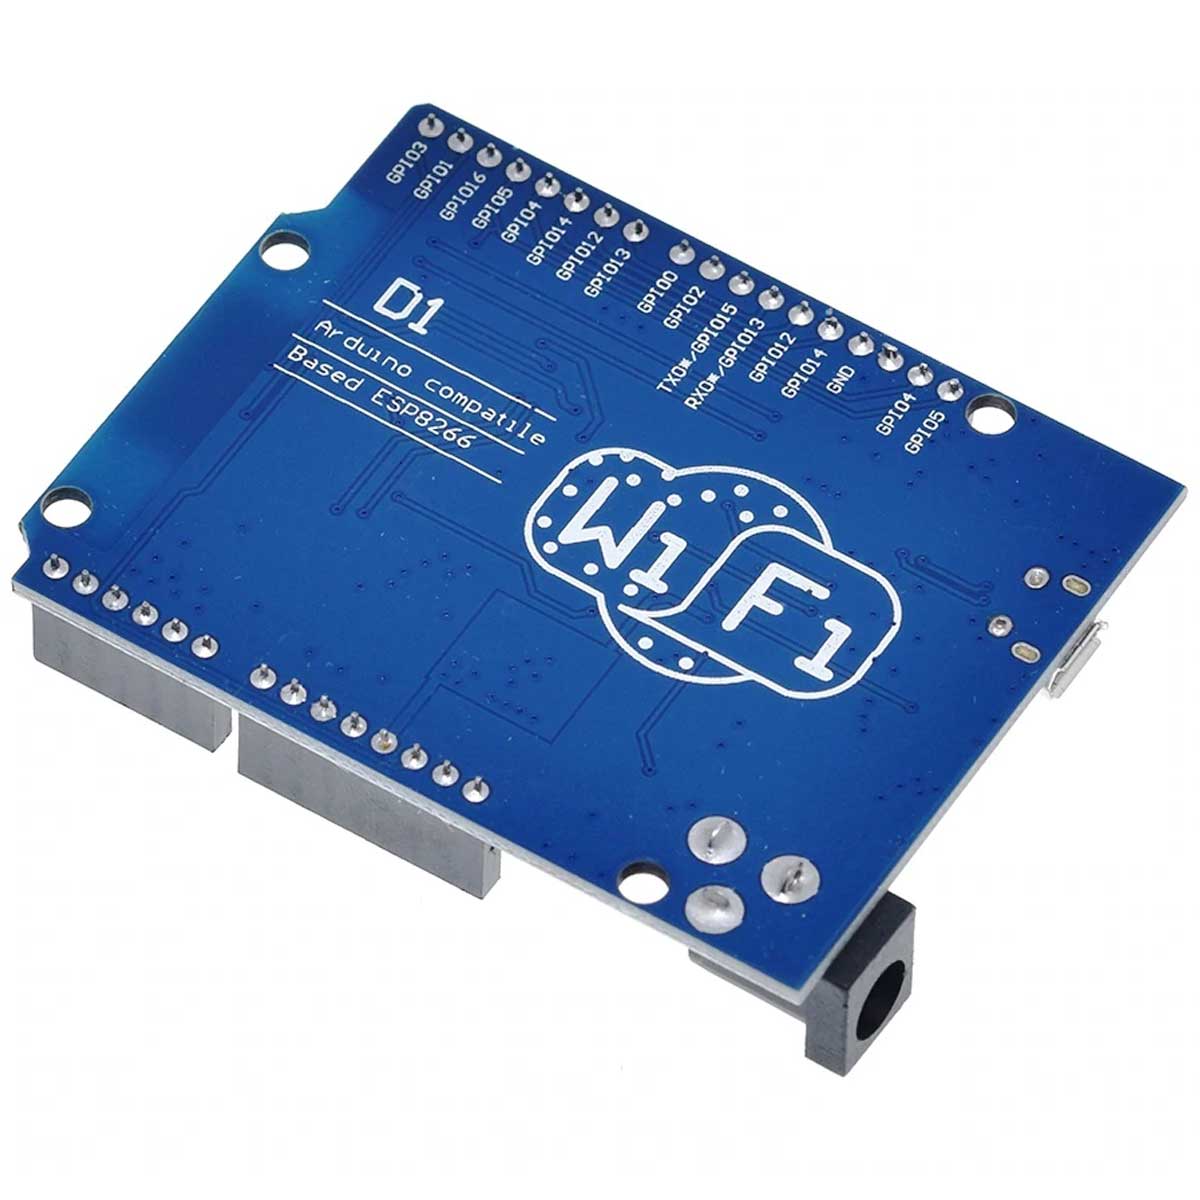 Placa WeMos D1 R2 Wifi ESP8266 compatível com Arduino e ESP8266